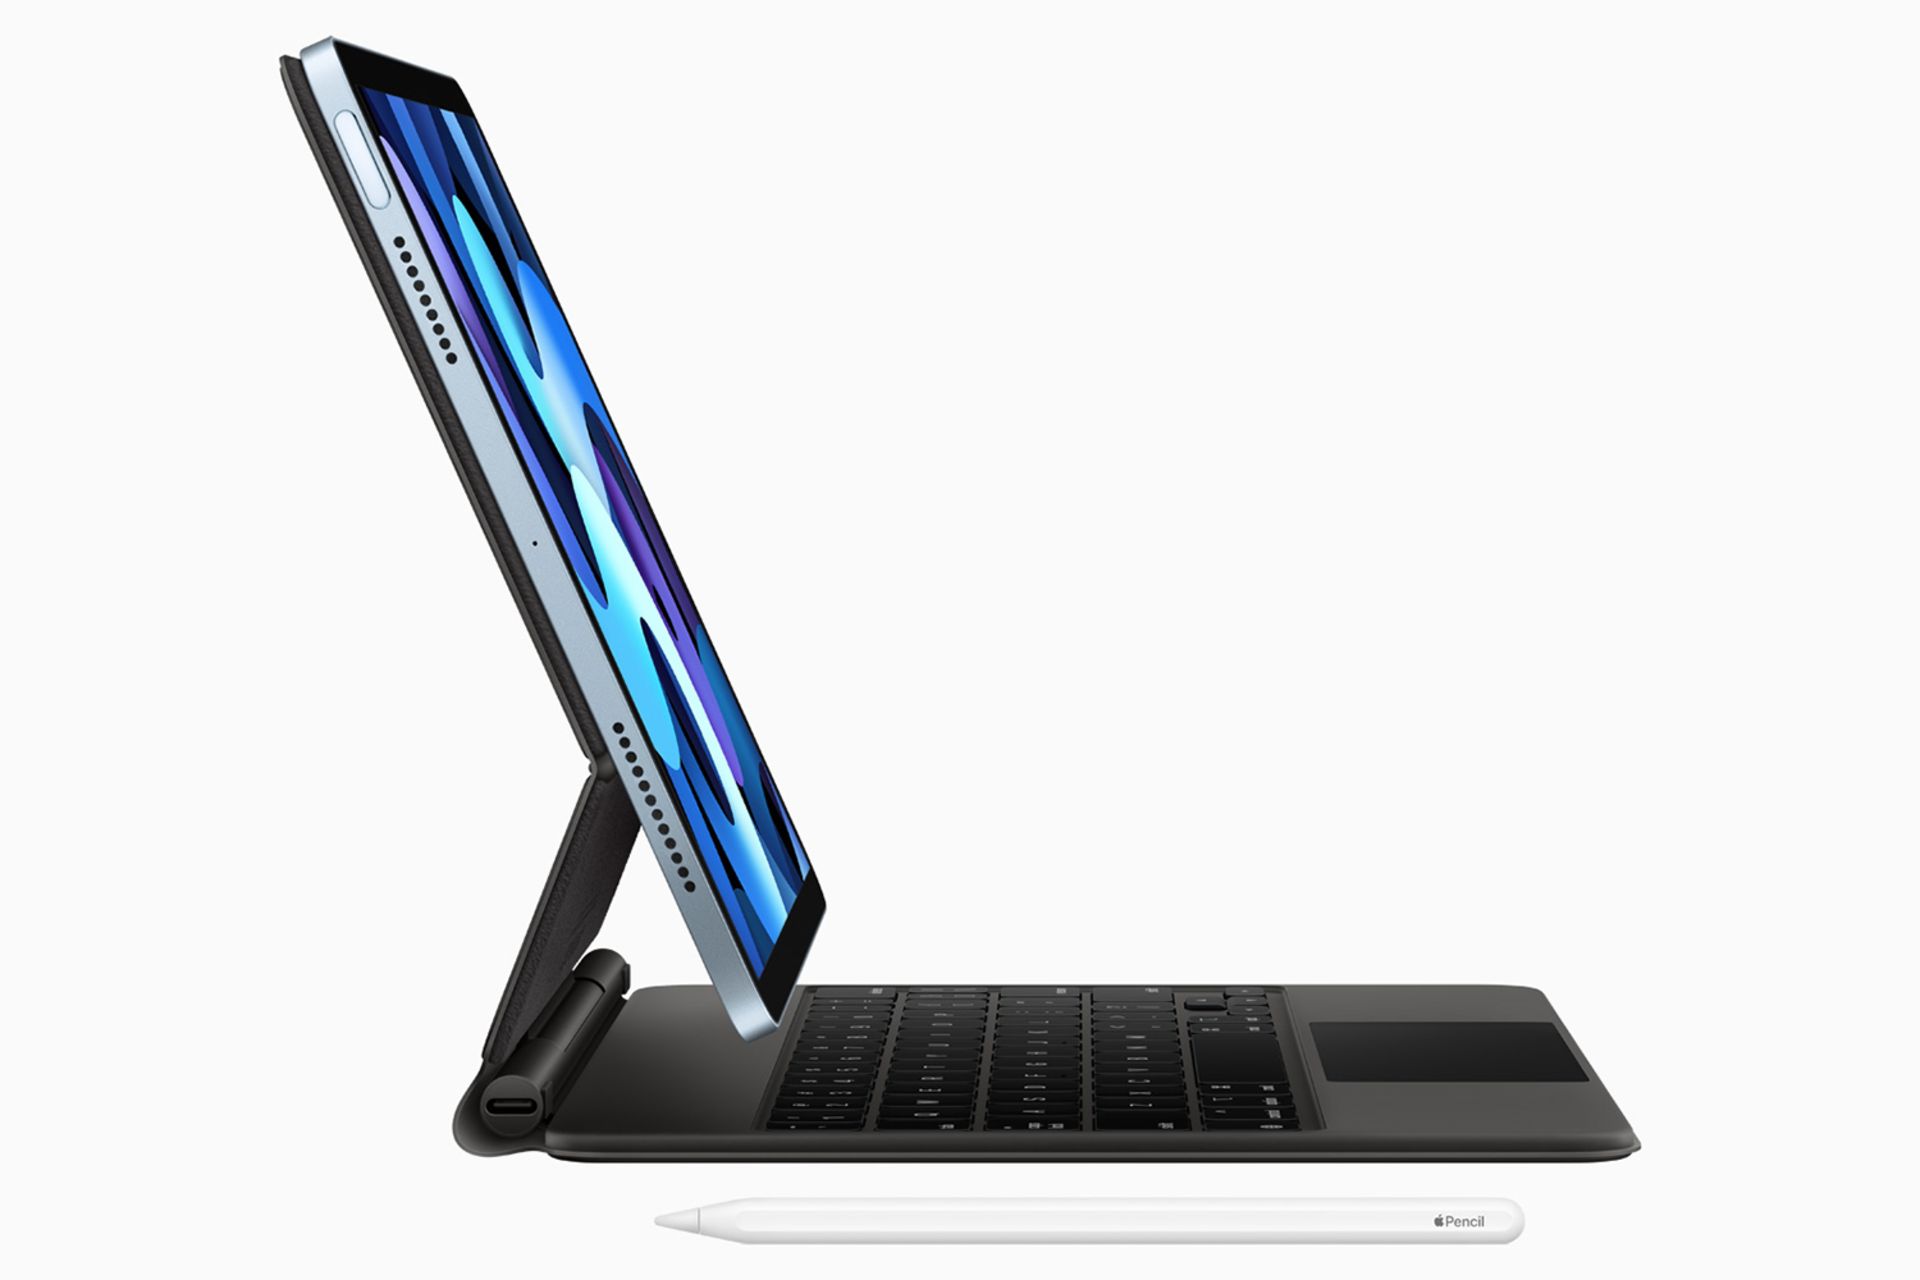 مرجع متخصصين ايران آيپد اير 2020 / iPad Air از نيم رخ با كيبورد و قلم اپل پنسل